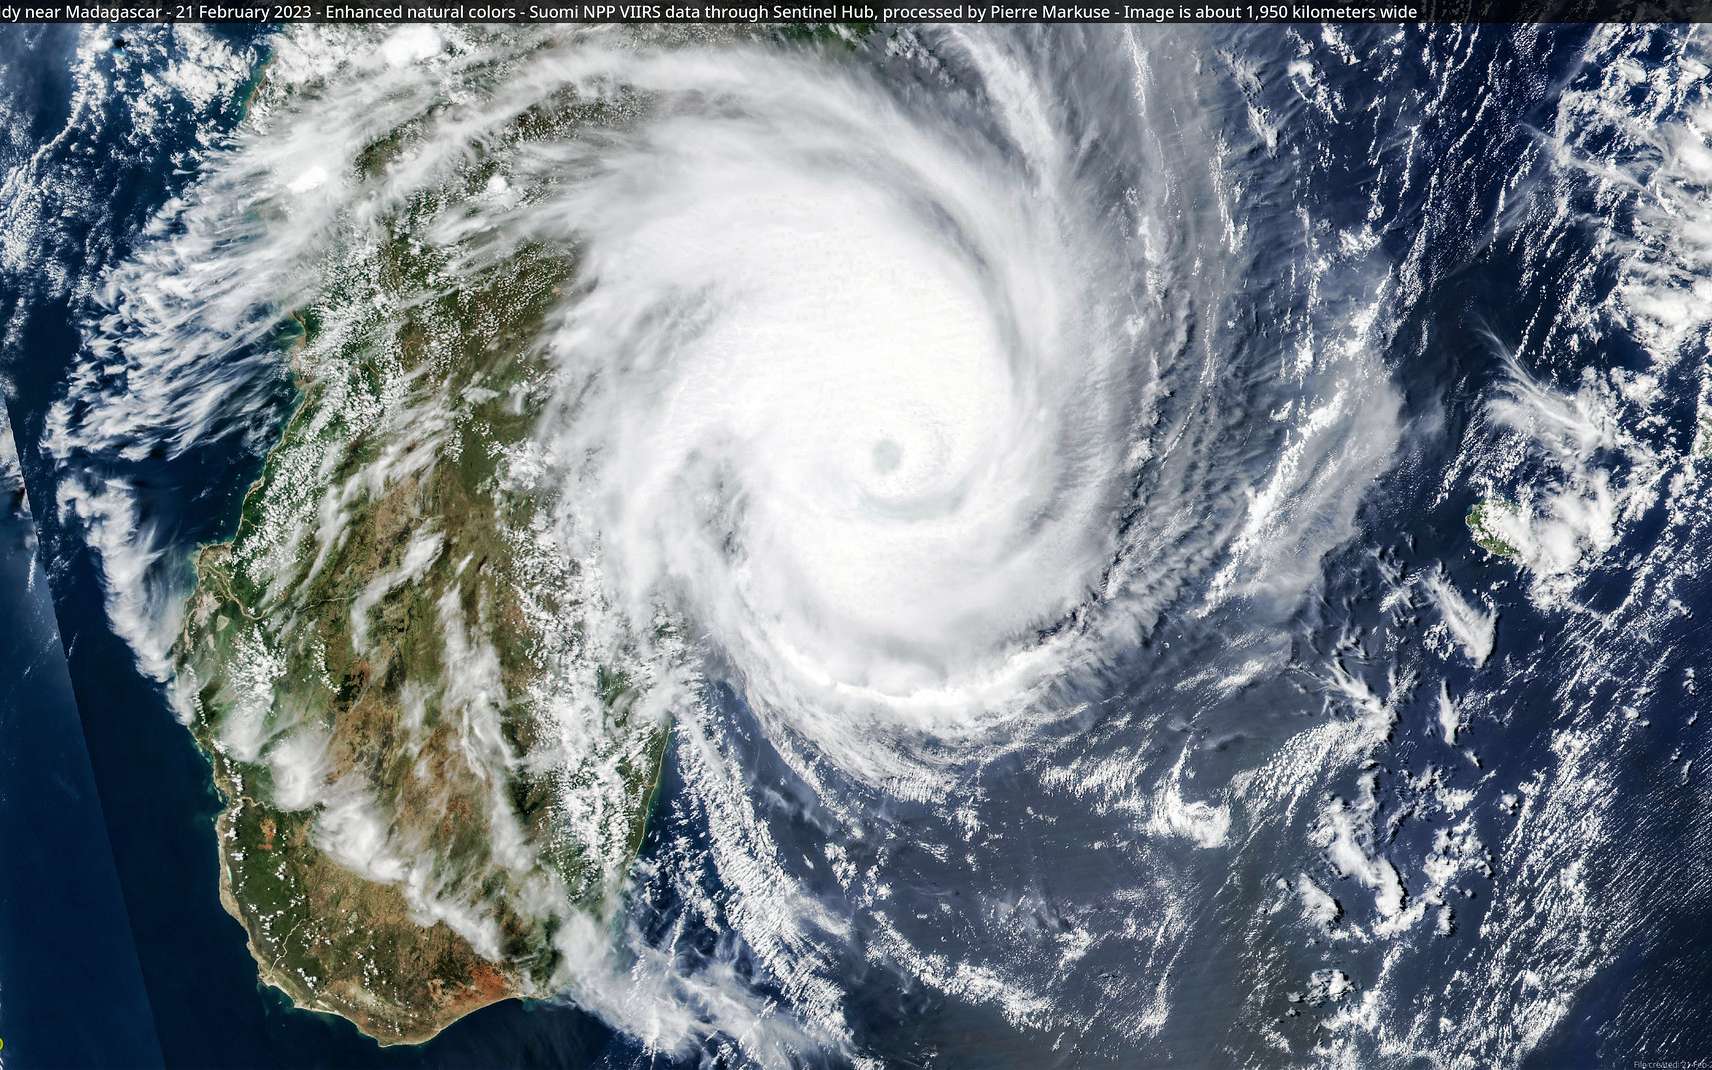 D'une intensité record, le cyclone Freddy a eu une trajectoire inhabituelle